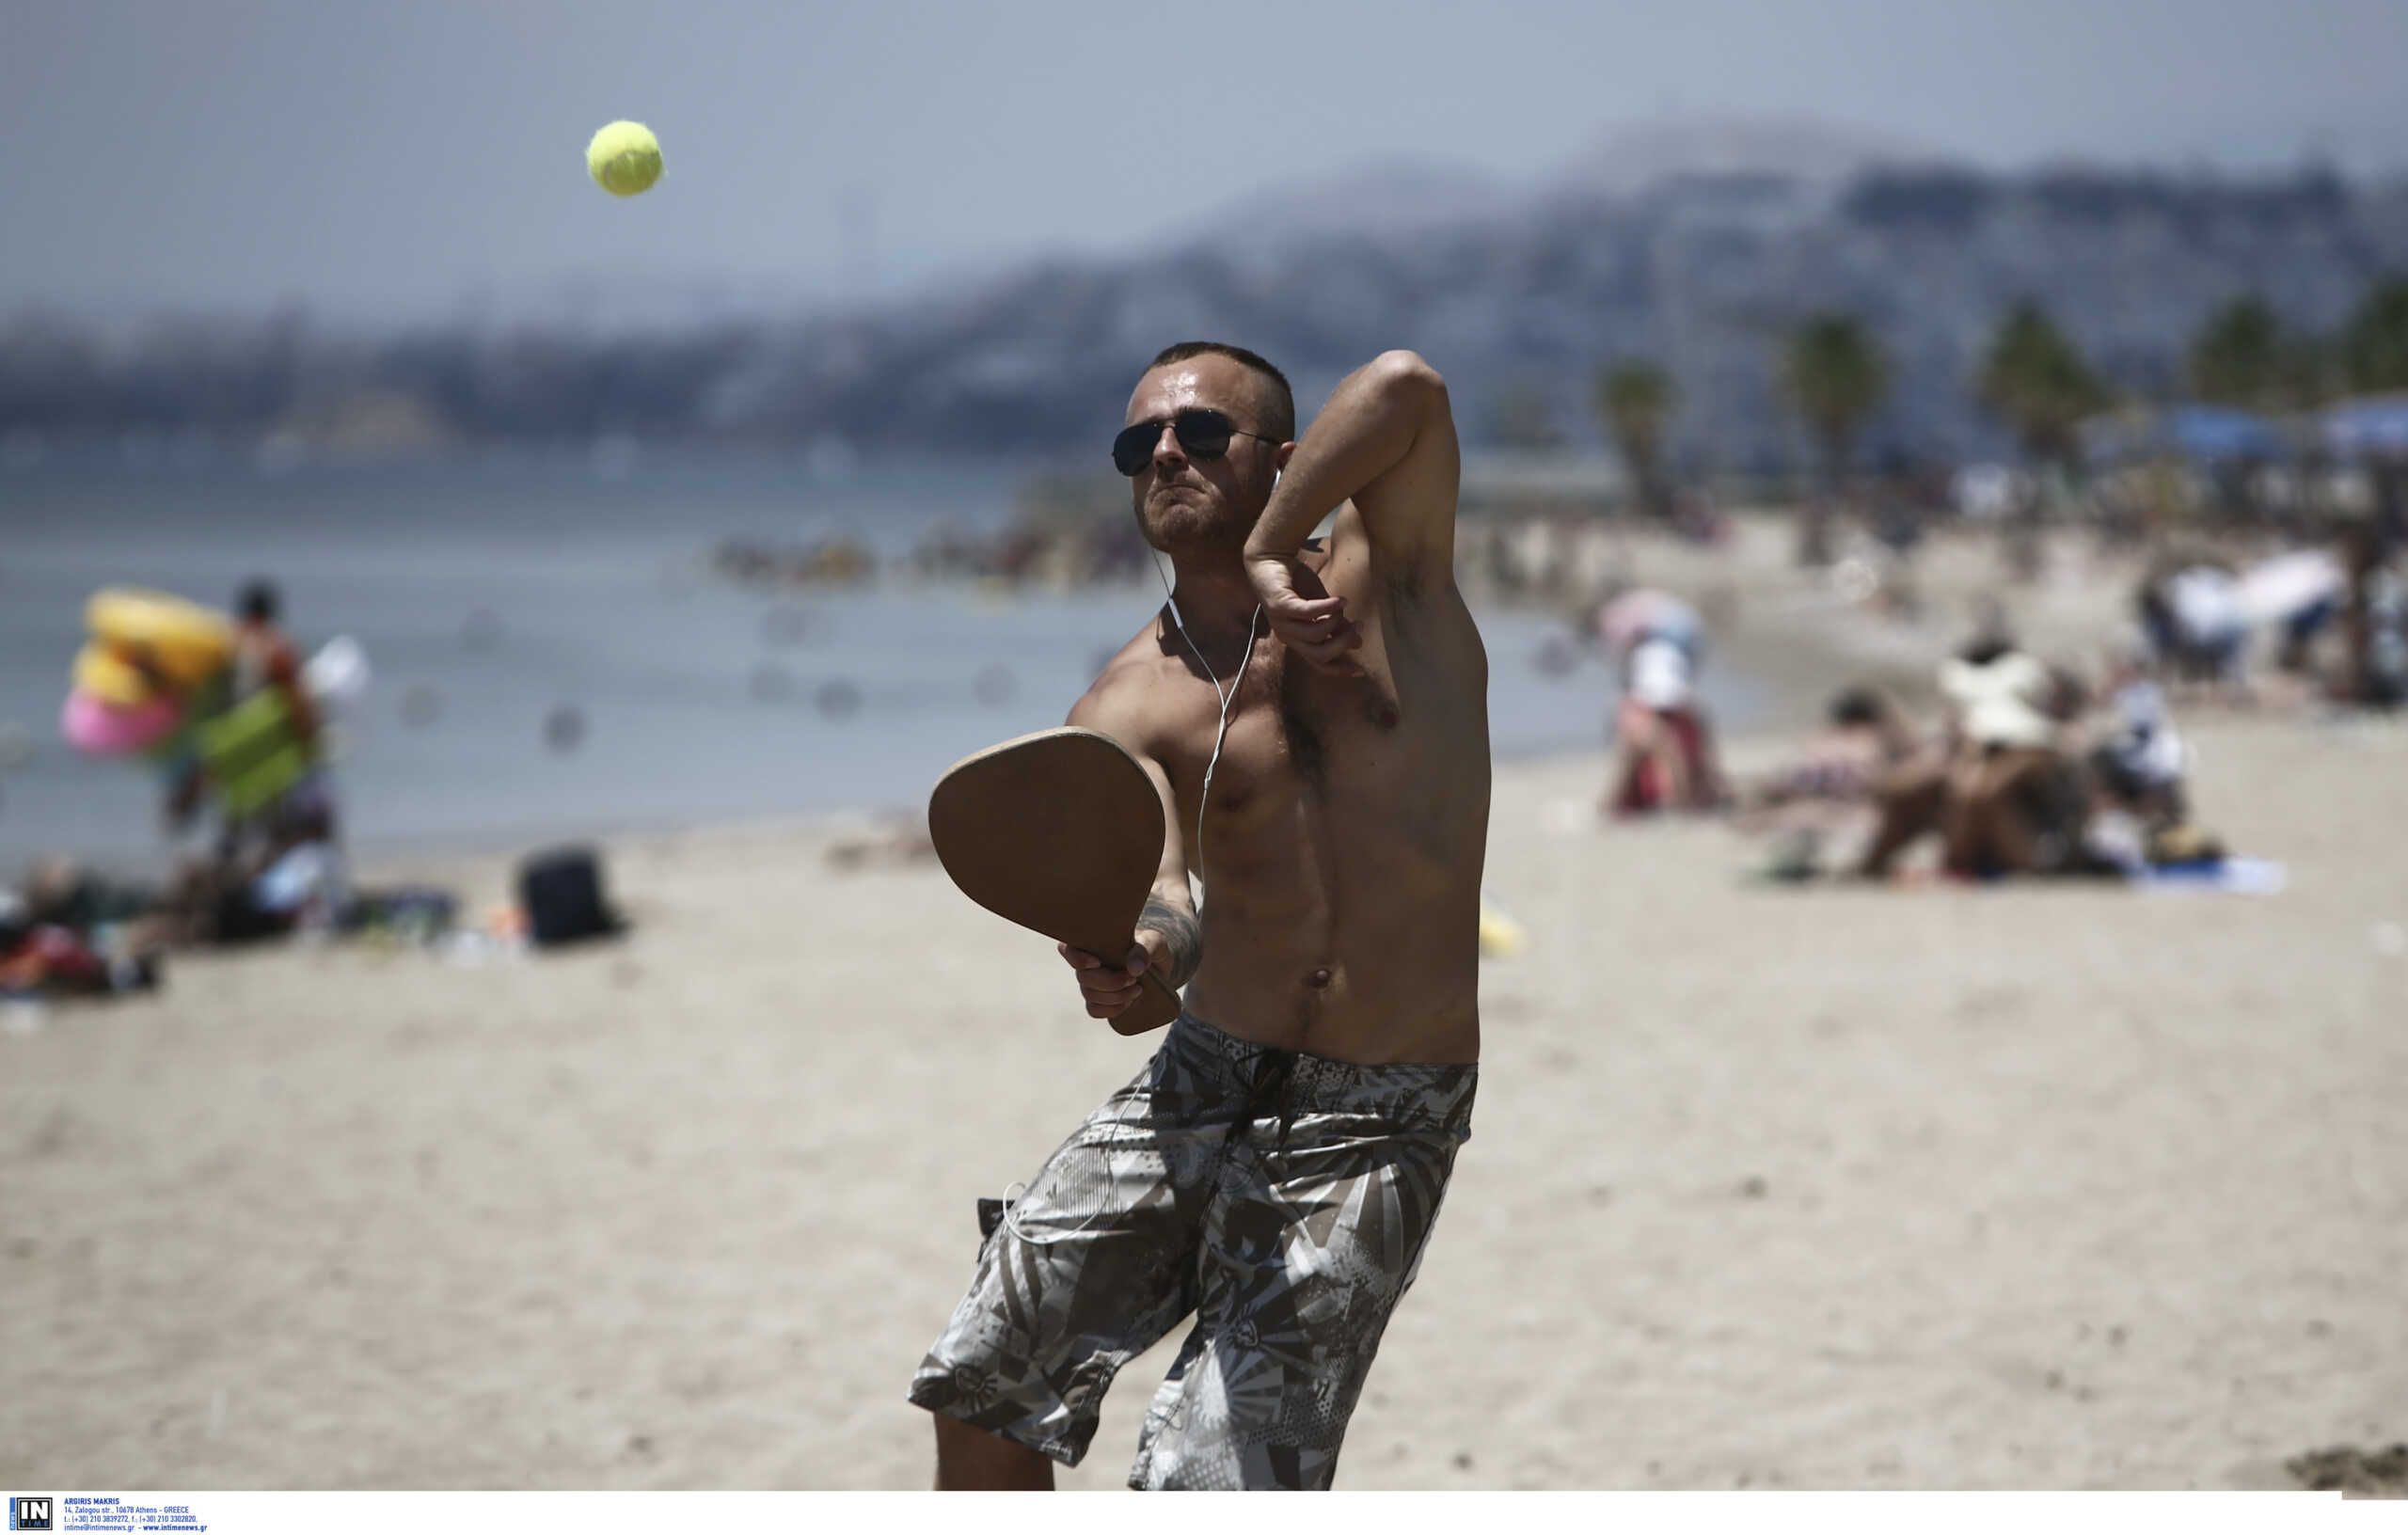 Τέλος οι ρακέτες σε κάποιες παραλίες – 1.000 ευρώ πρόστιμο για τους παραβάτες